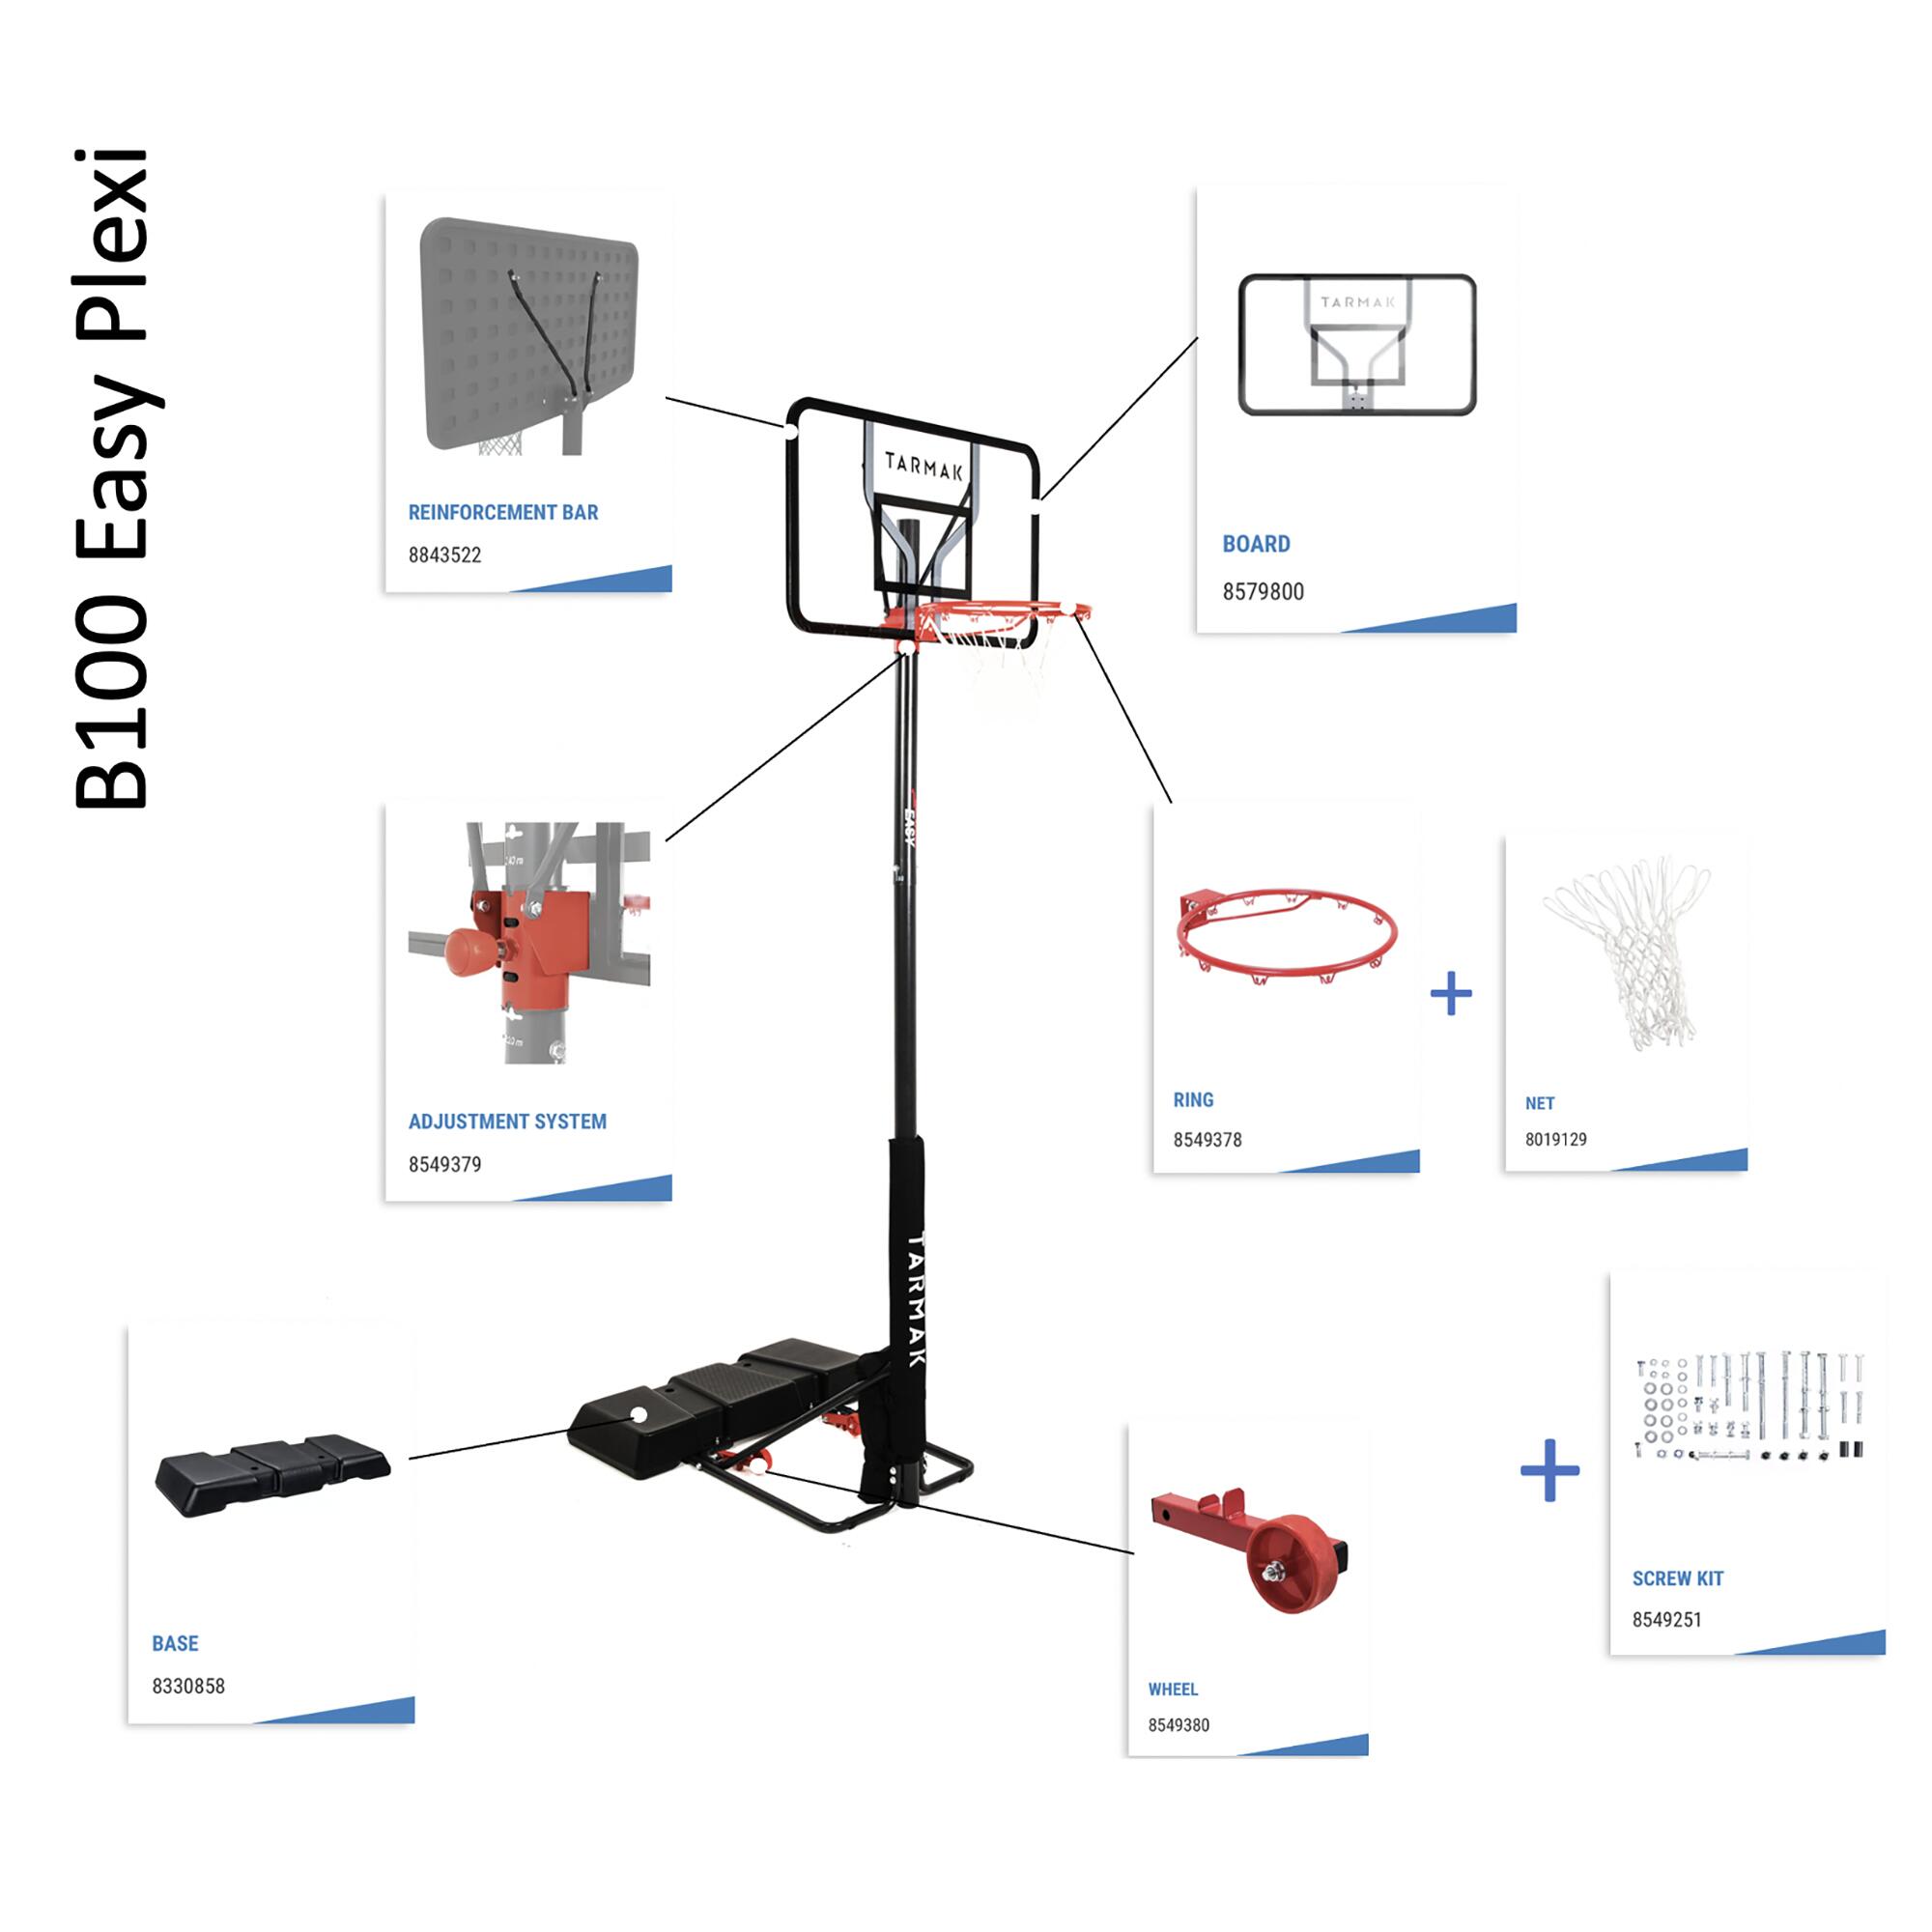 Basketball Hoop Base B300 and B100 4/4